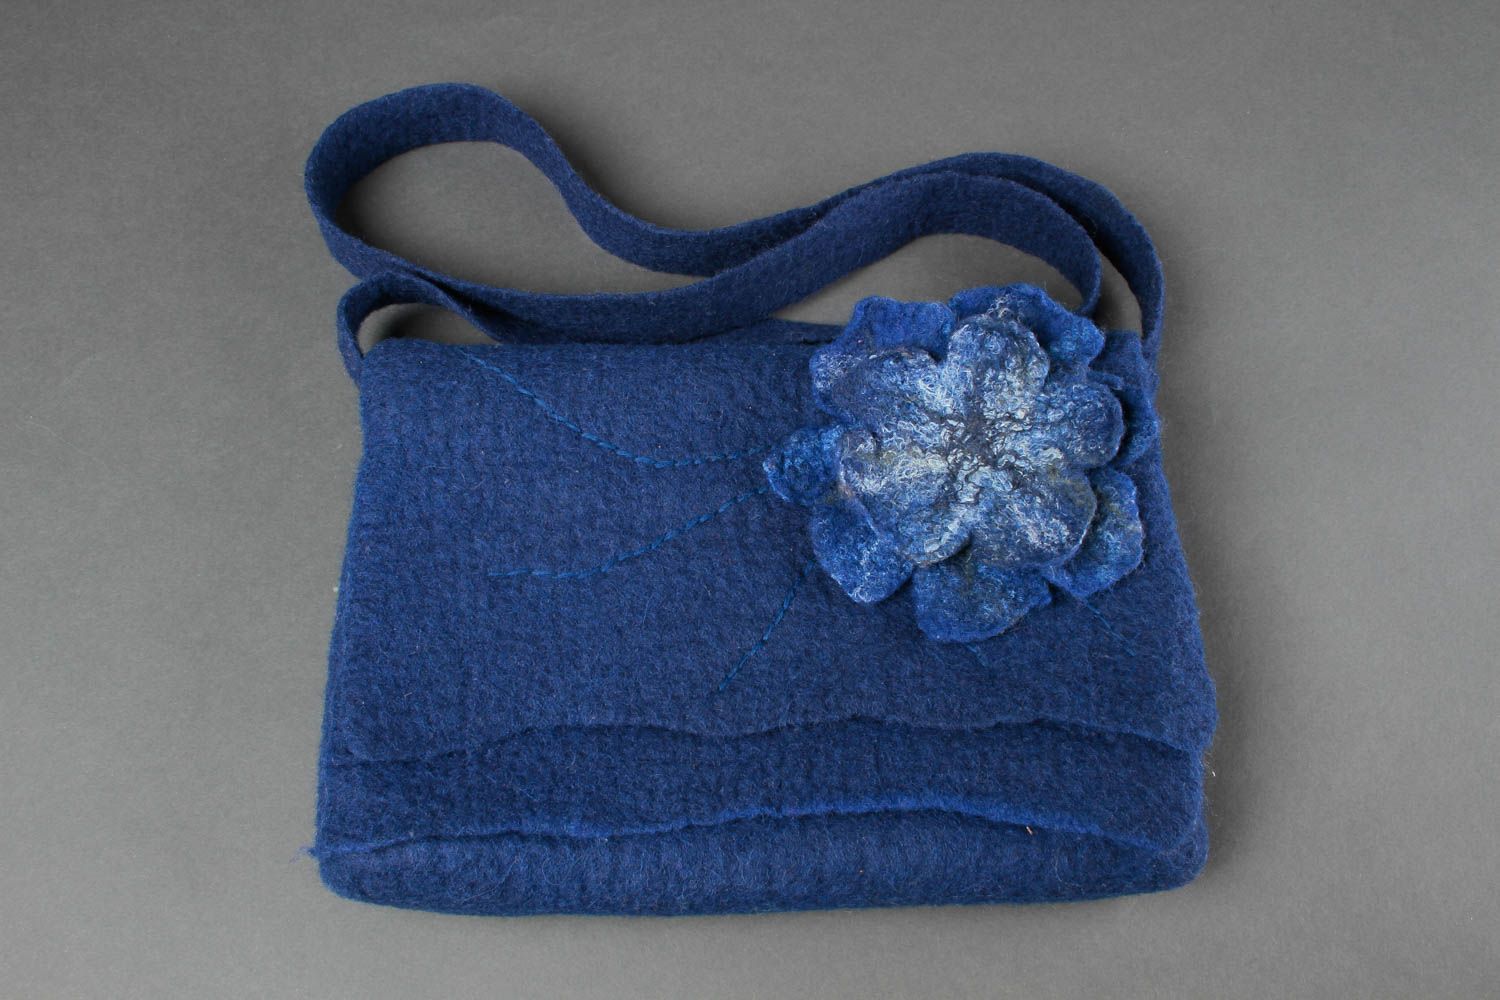 Сумка ручной работы женская сумка синяя через плечо сумка валяние с цветком фото 2